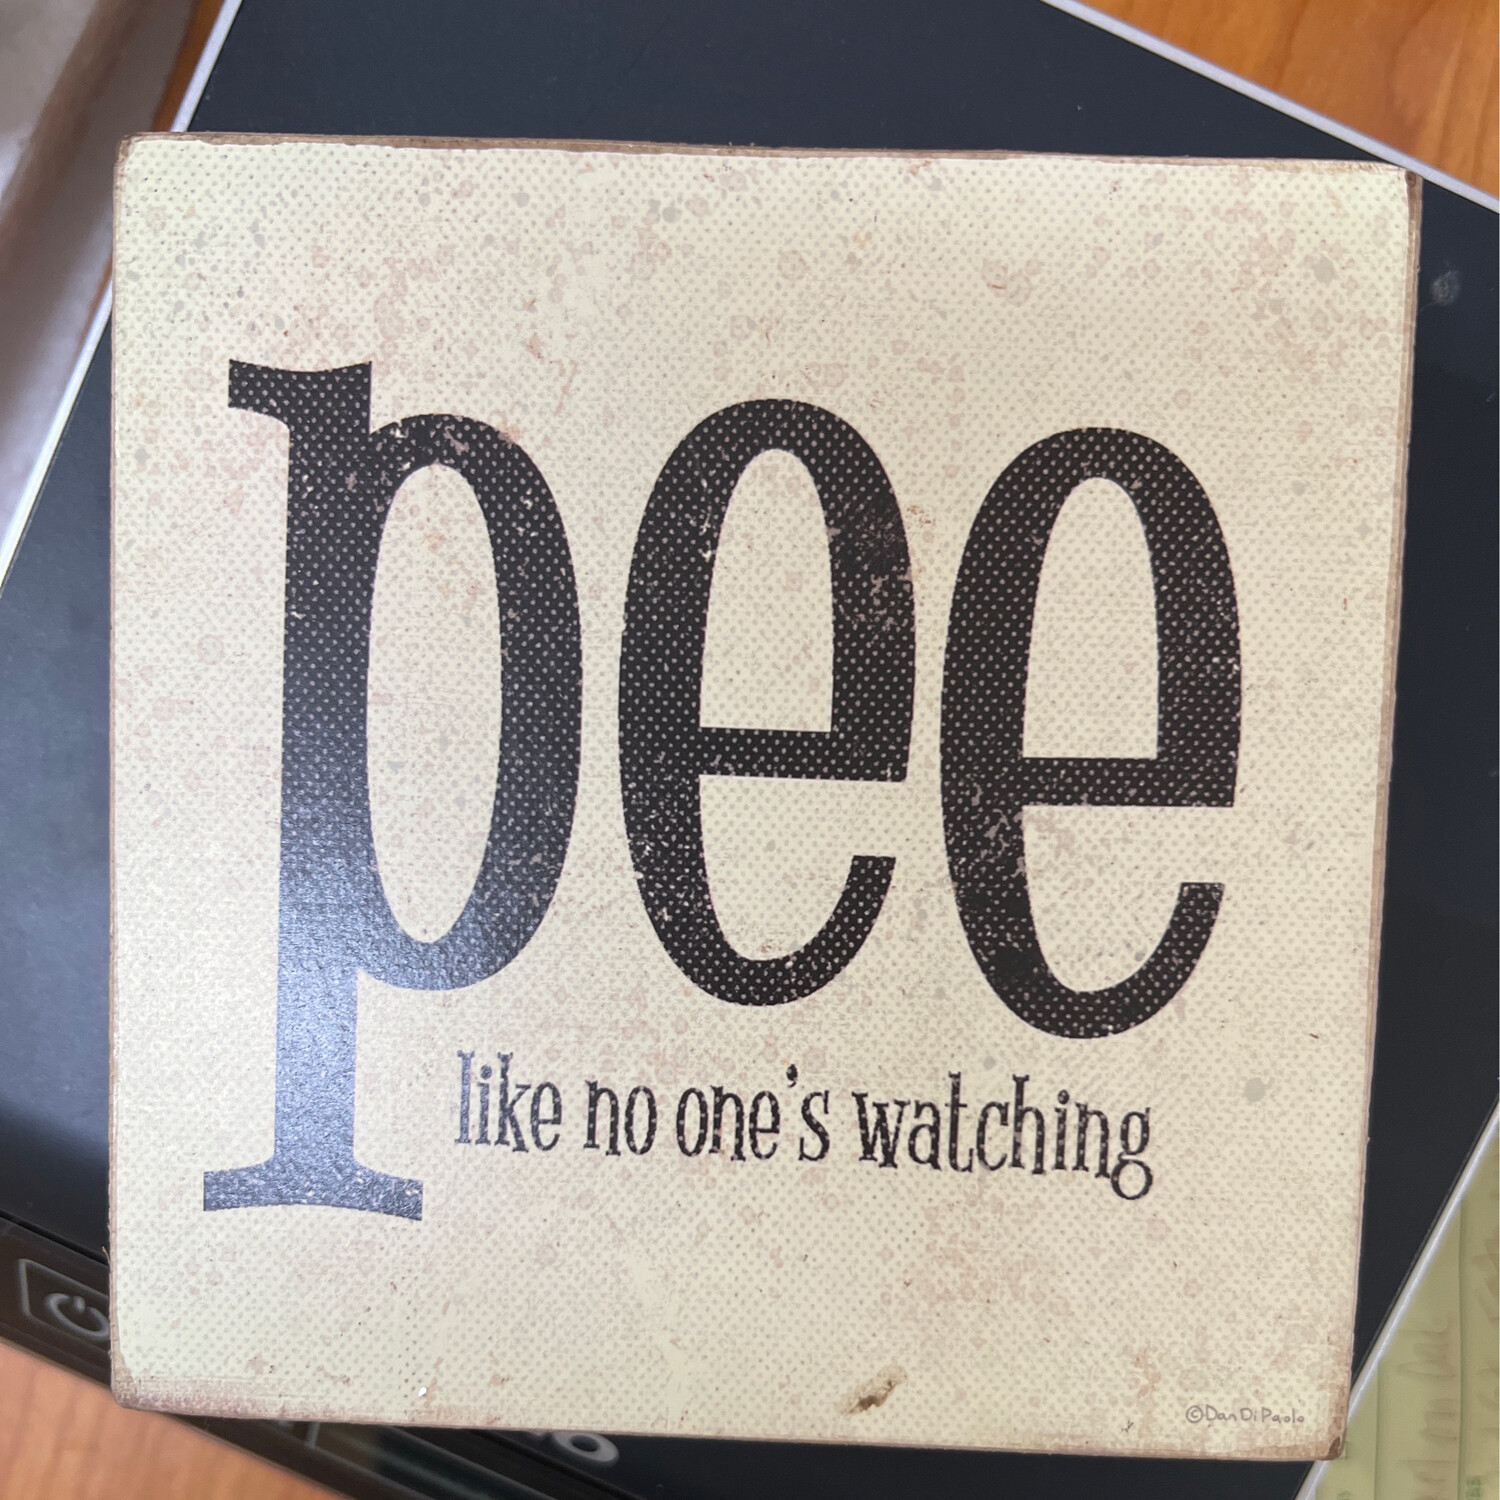 Pee Like No One's Watching